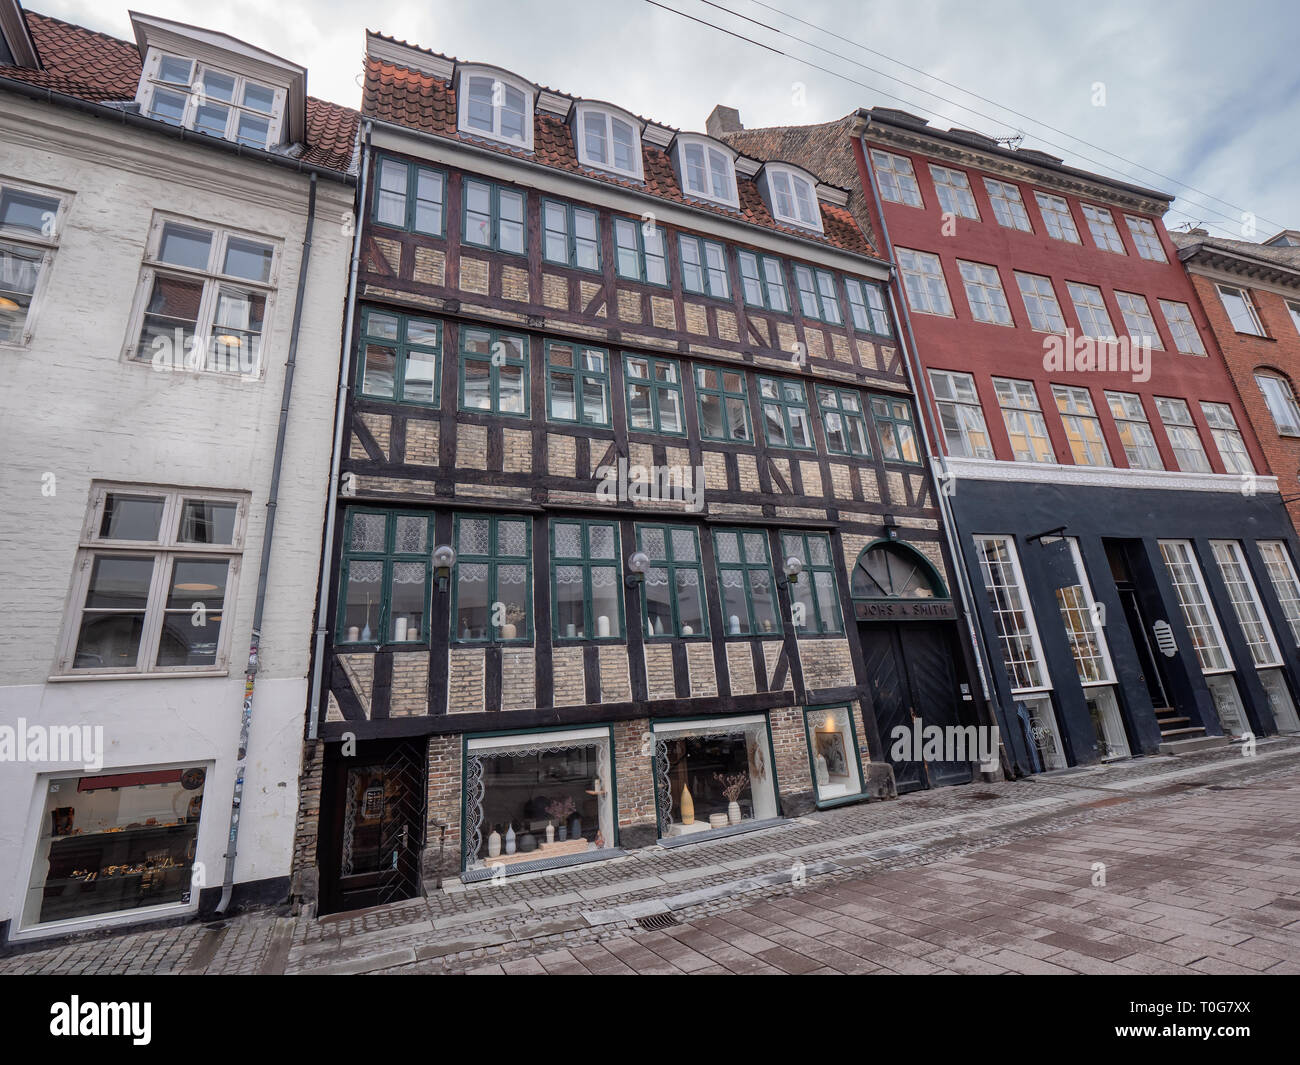 Copenhagen old cobbled streets, Denmark Stock Photo